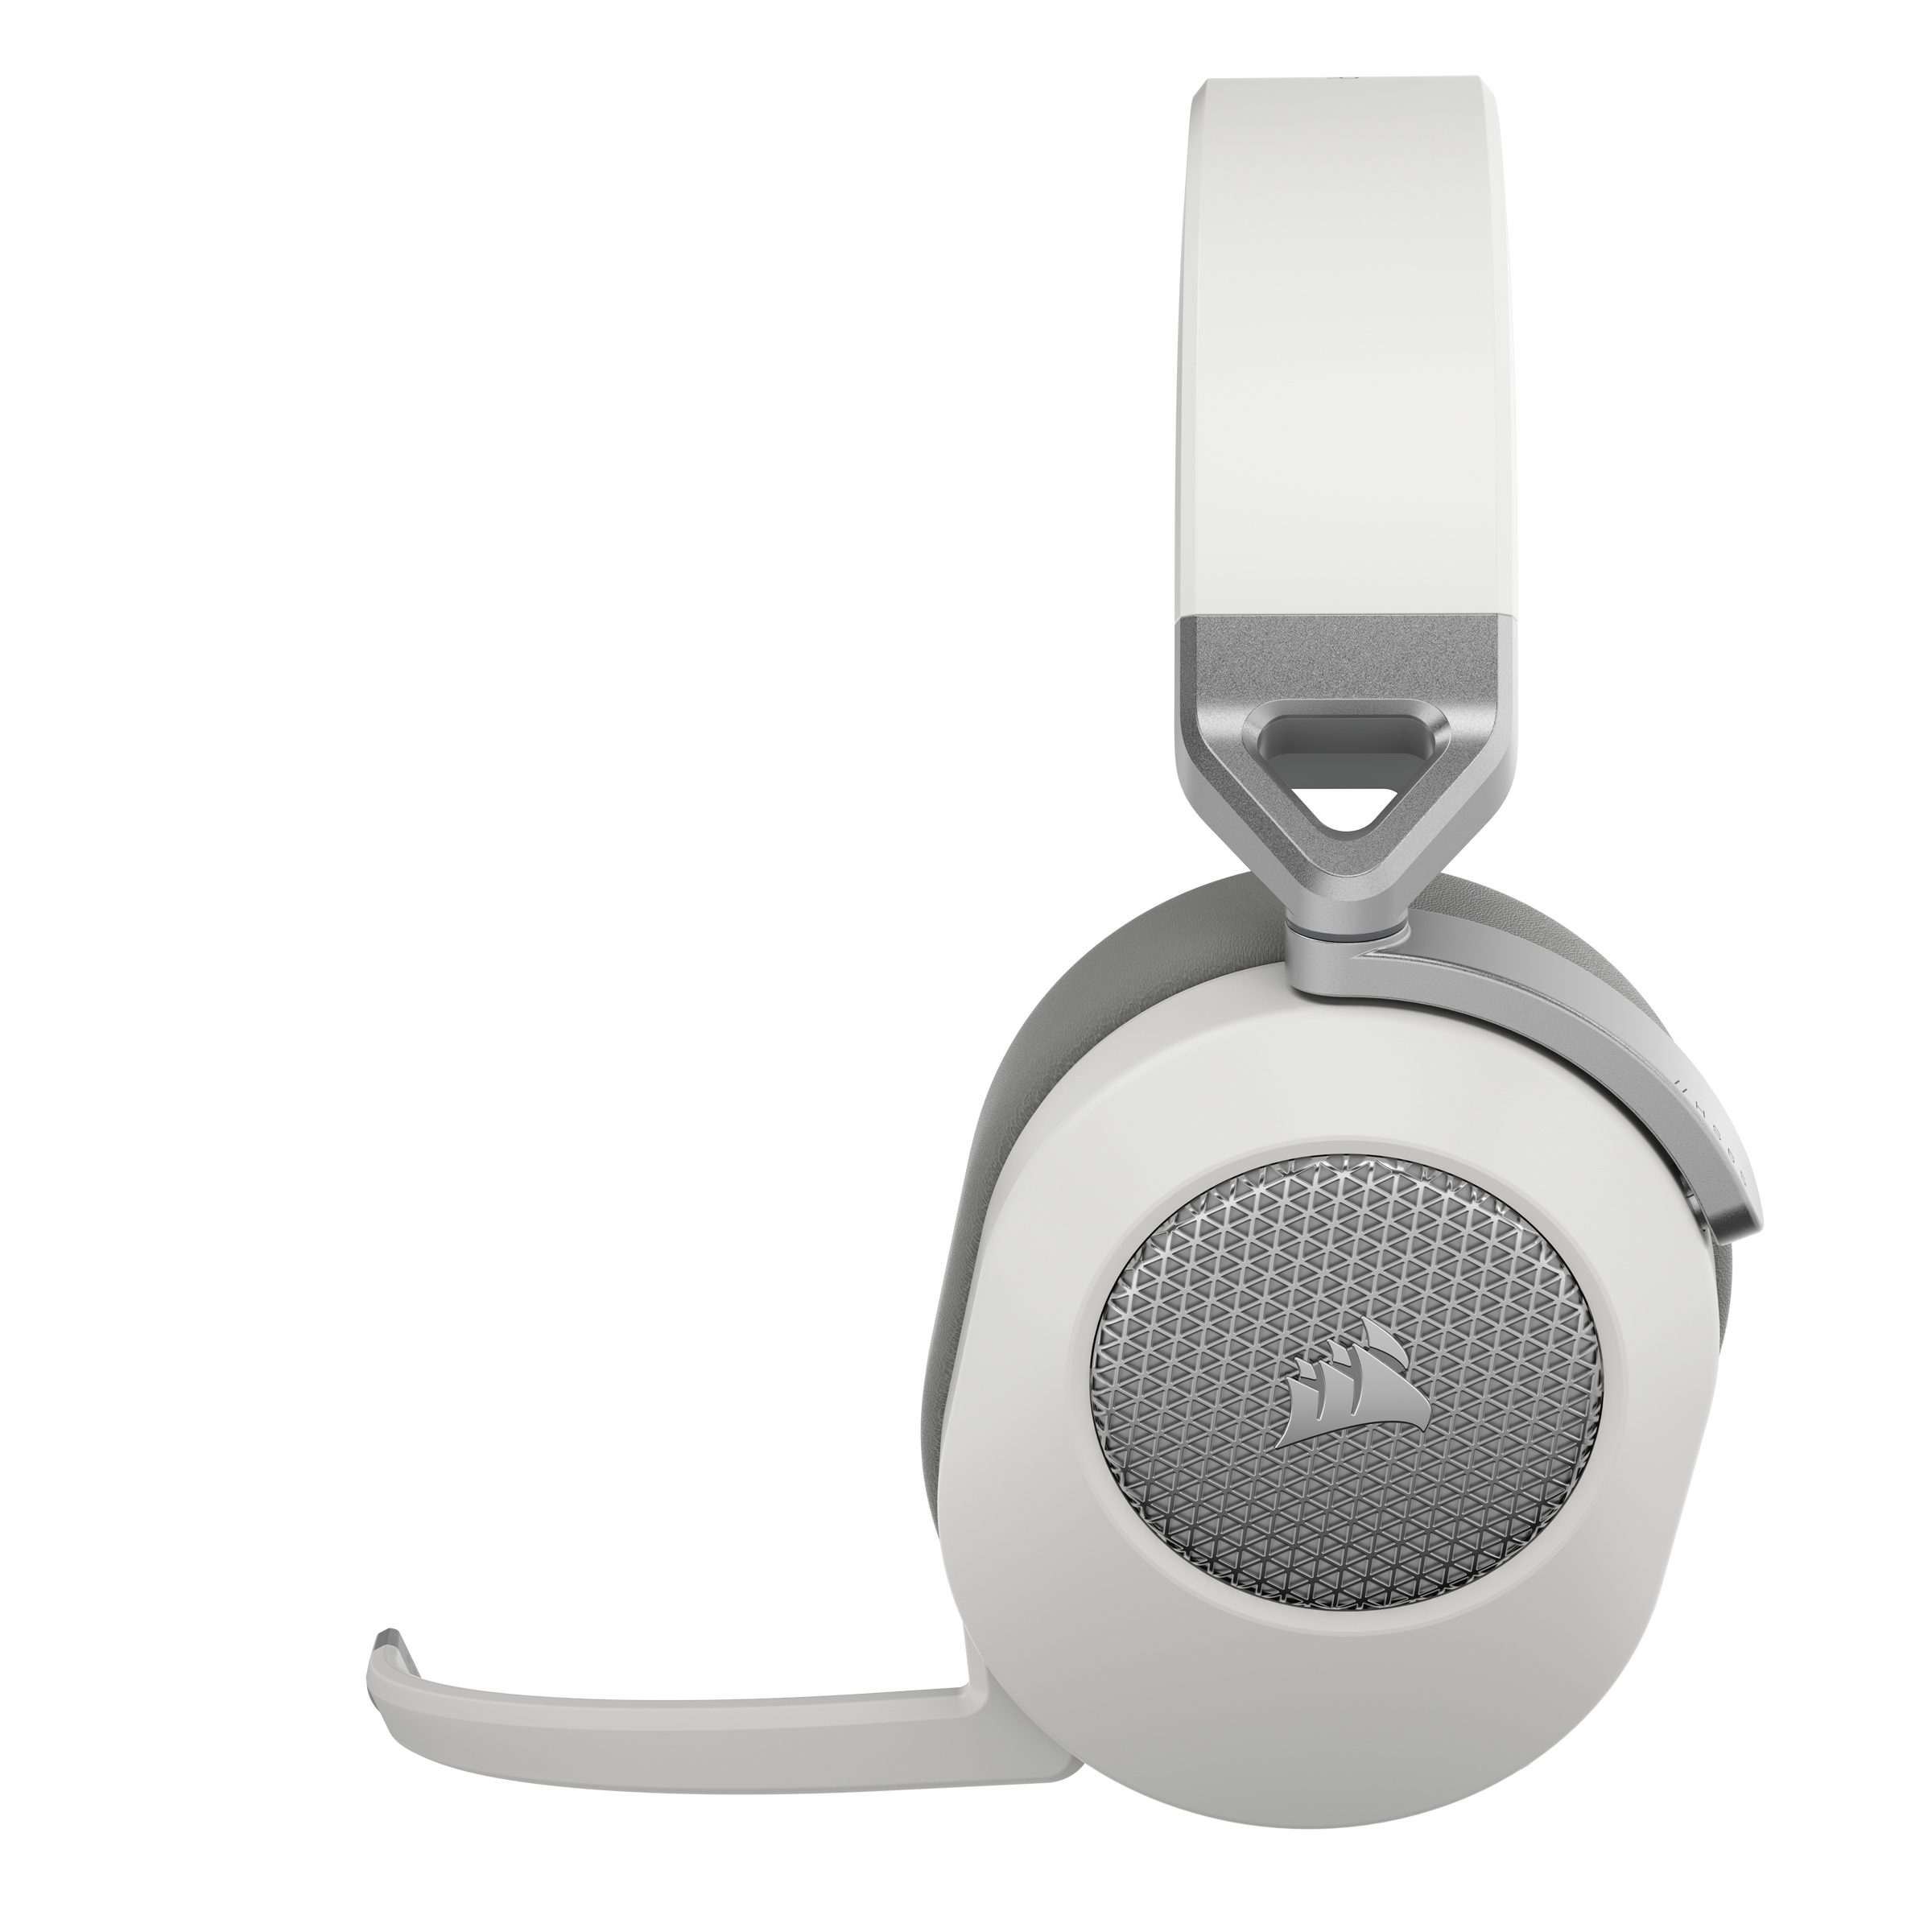 Corsair Gaming-Headset Weiß Bluetooth, HS65 - Wireless) (A2DP Wireless